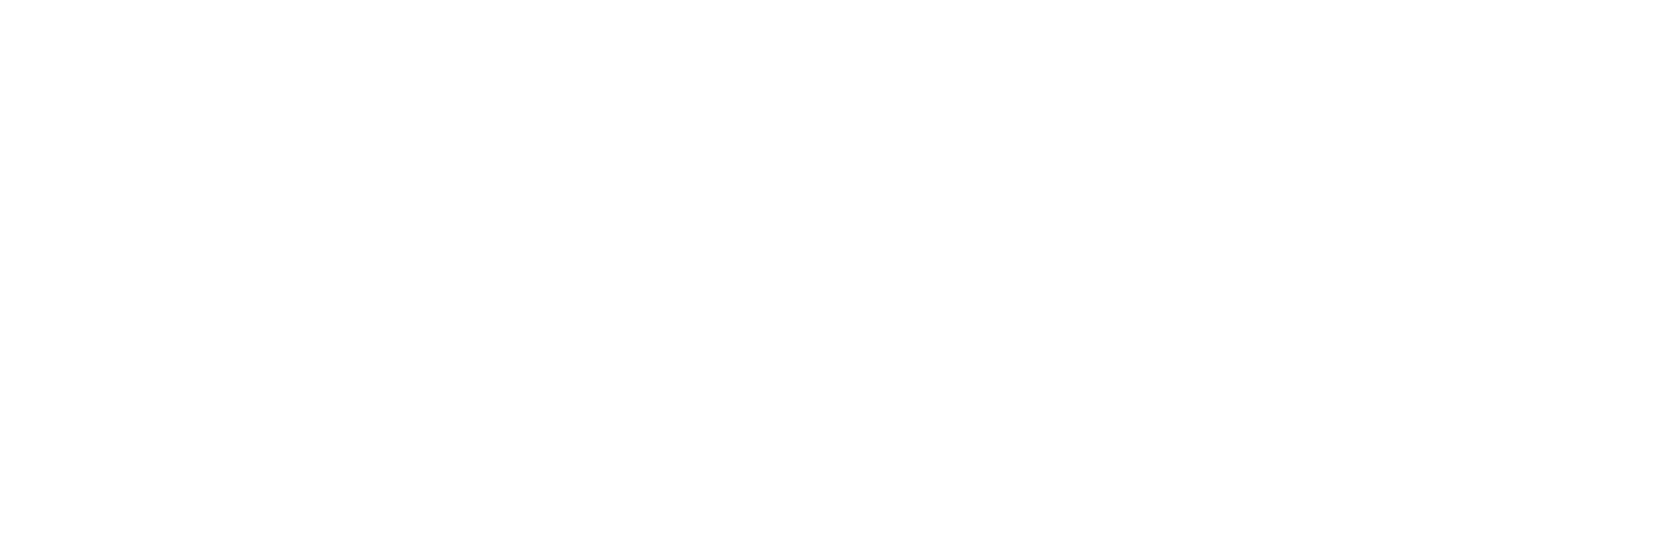 Gaztransport & Technigaz logo for dark backgrounds (transparent PNG)